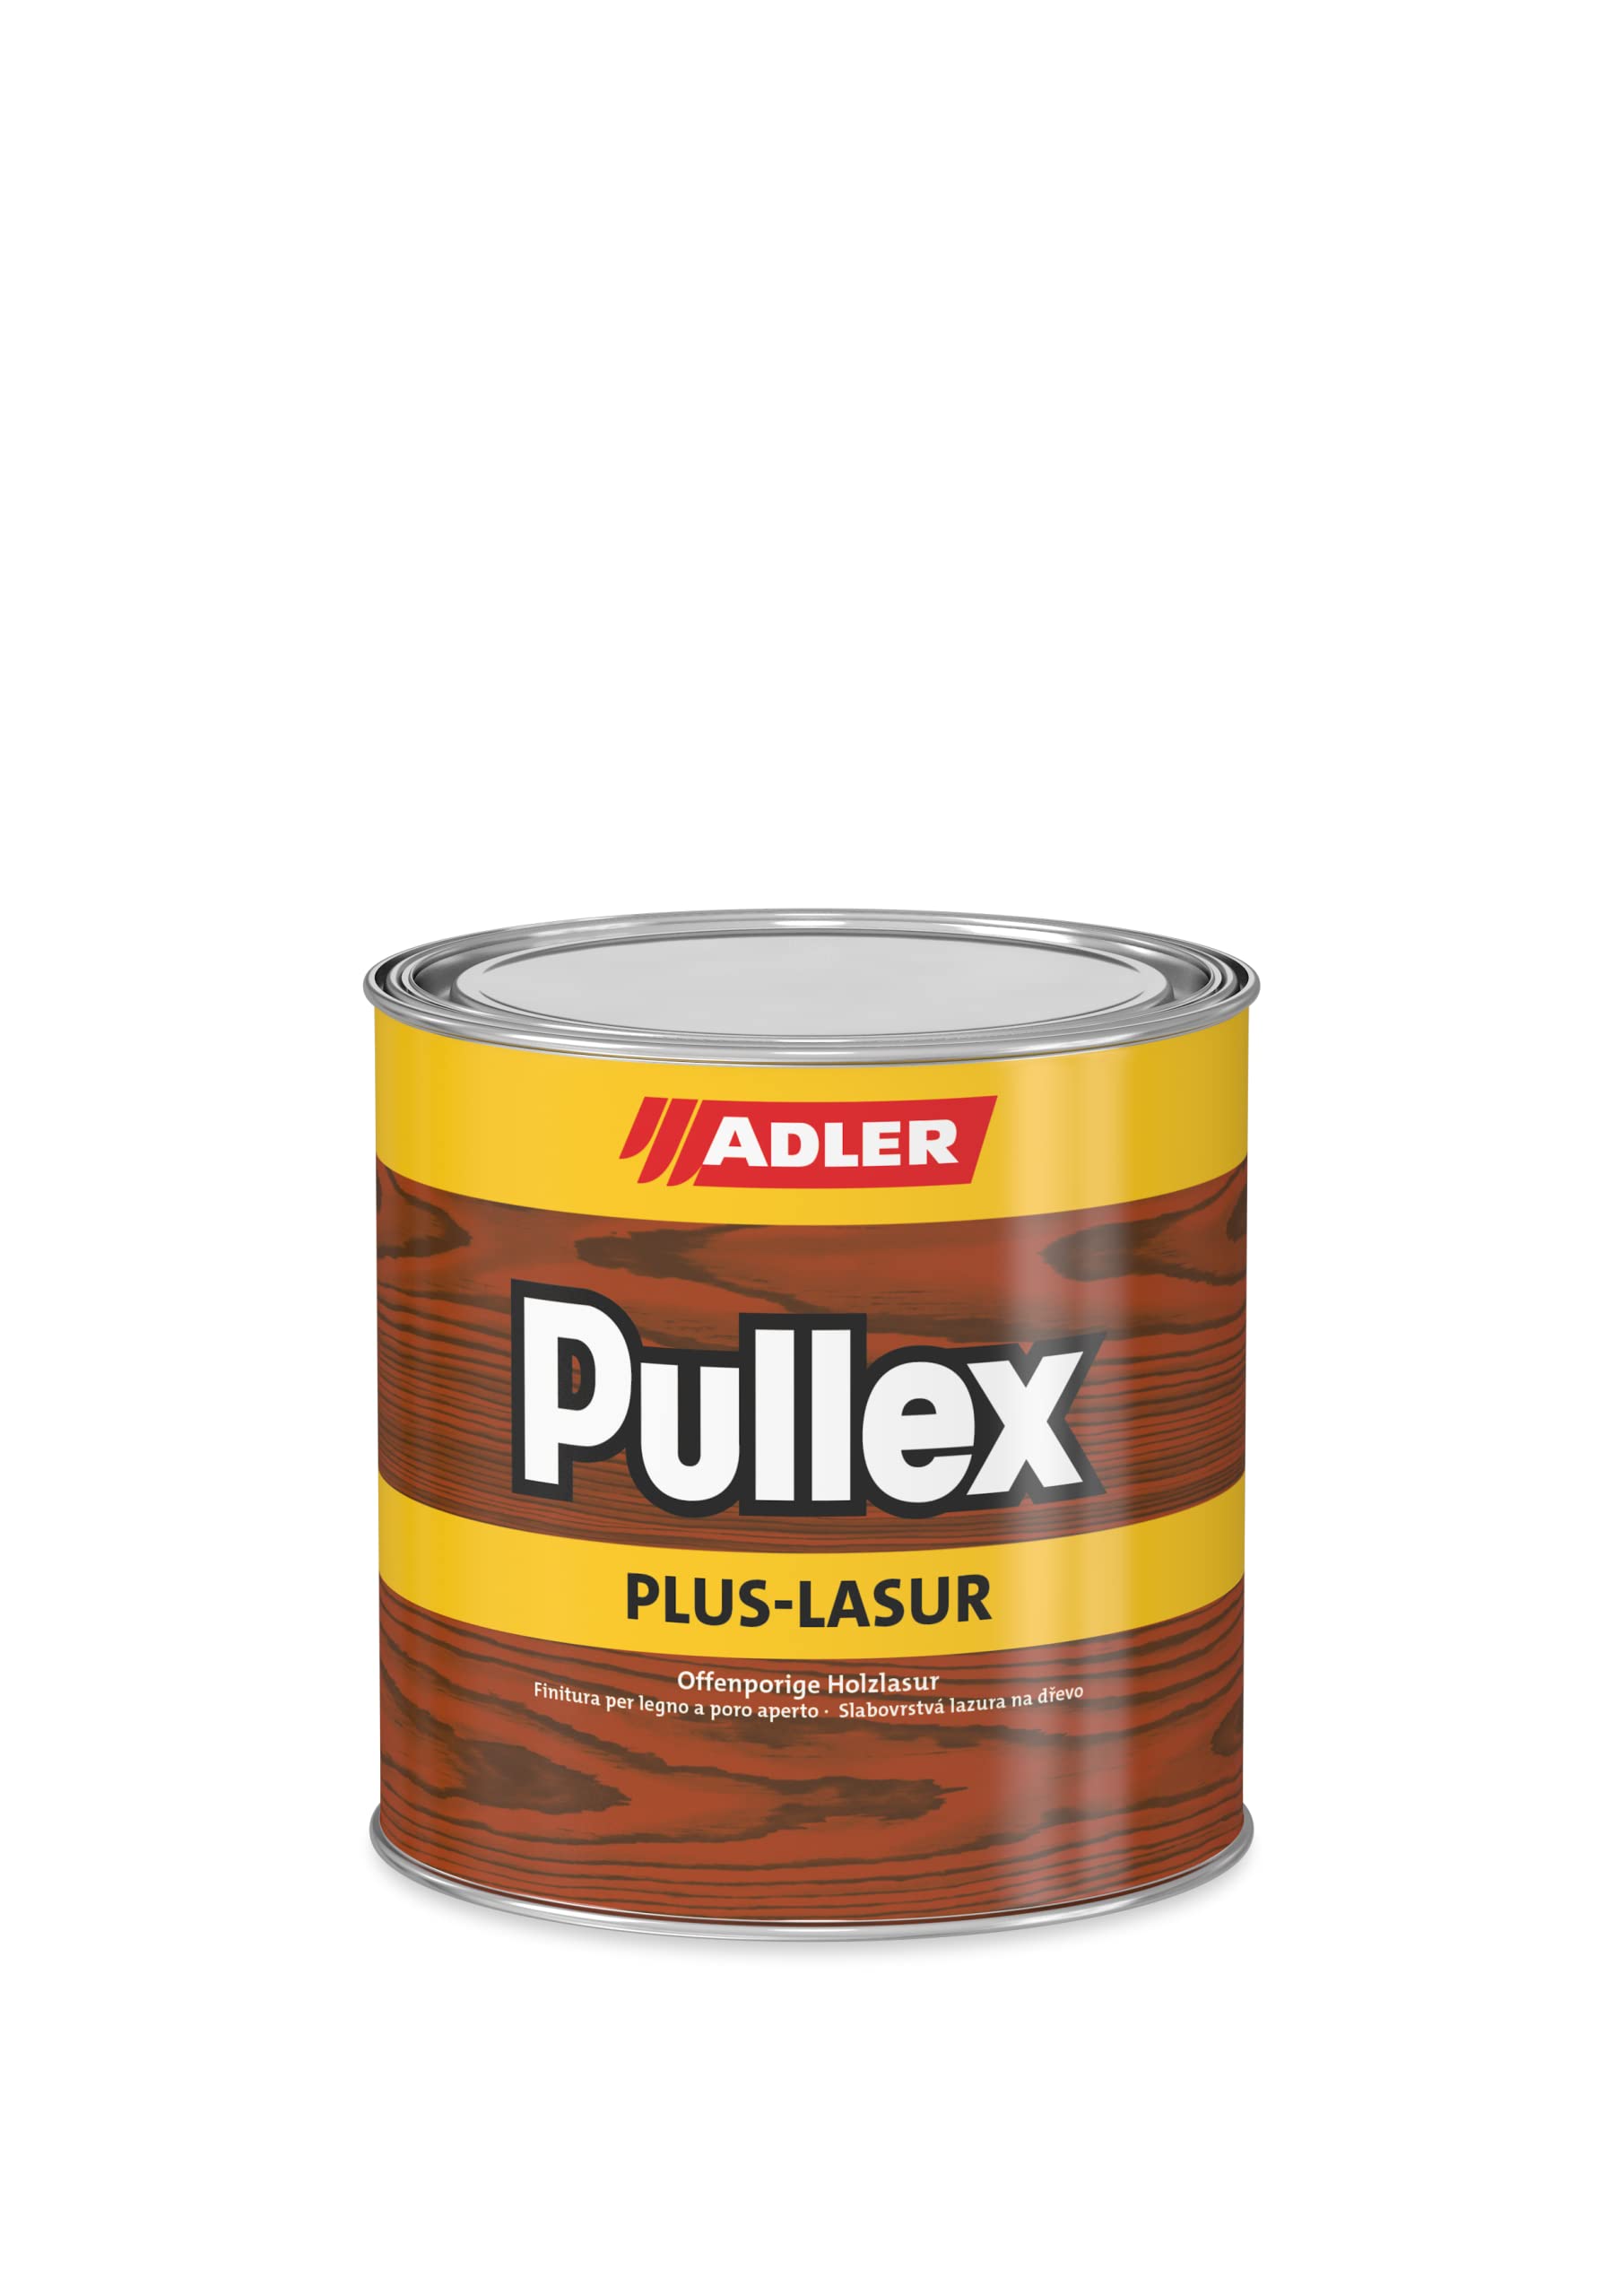 ADLER Pullex Plus-Lasur - Holzlasur Außen Farblos - Universell einsetzbare & aromatenfreie Holzschutzlasur als perfekter UV- & Wetterschutz - 2,5 l Eiche/Braun